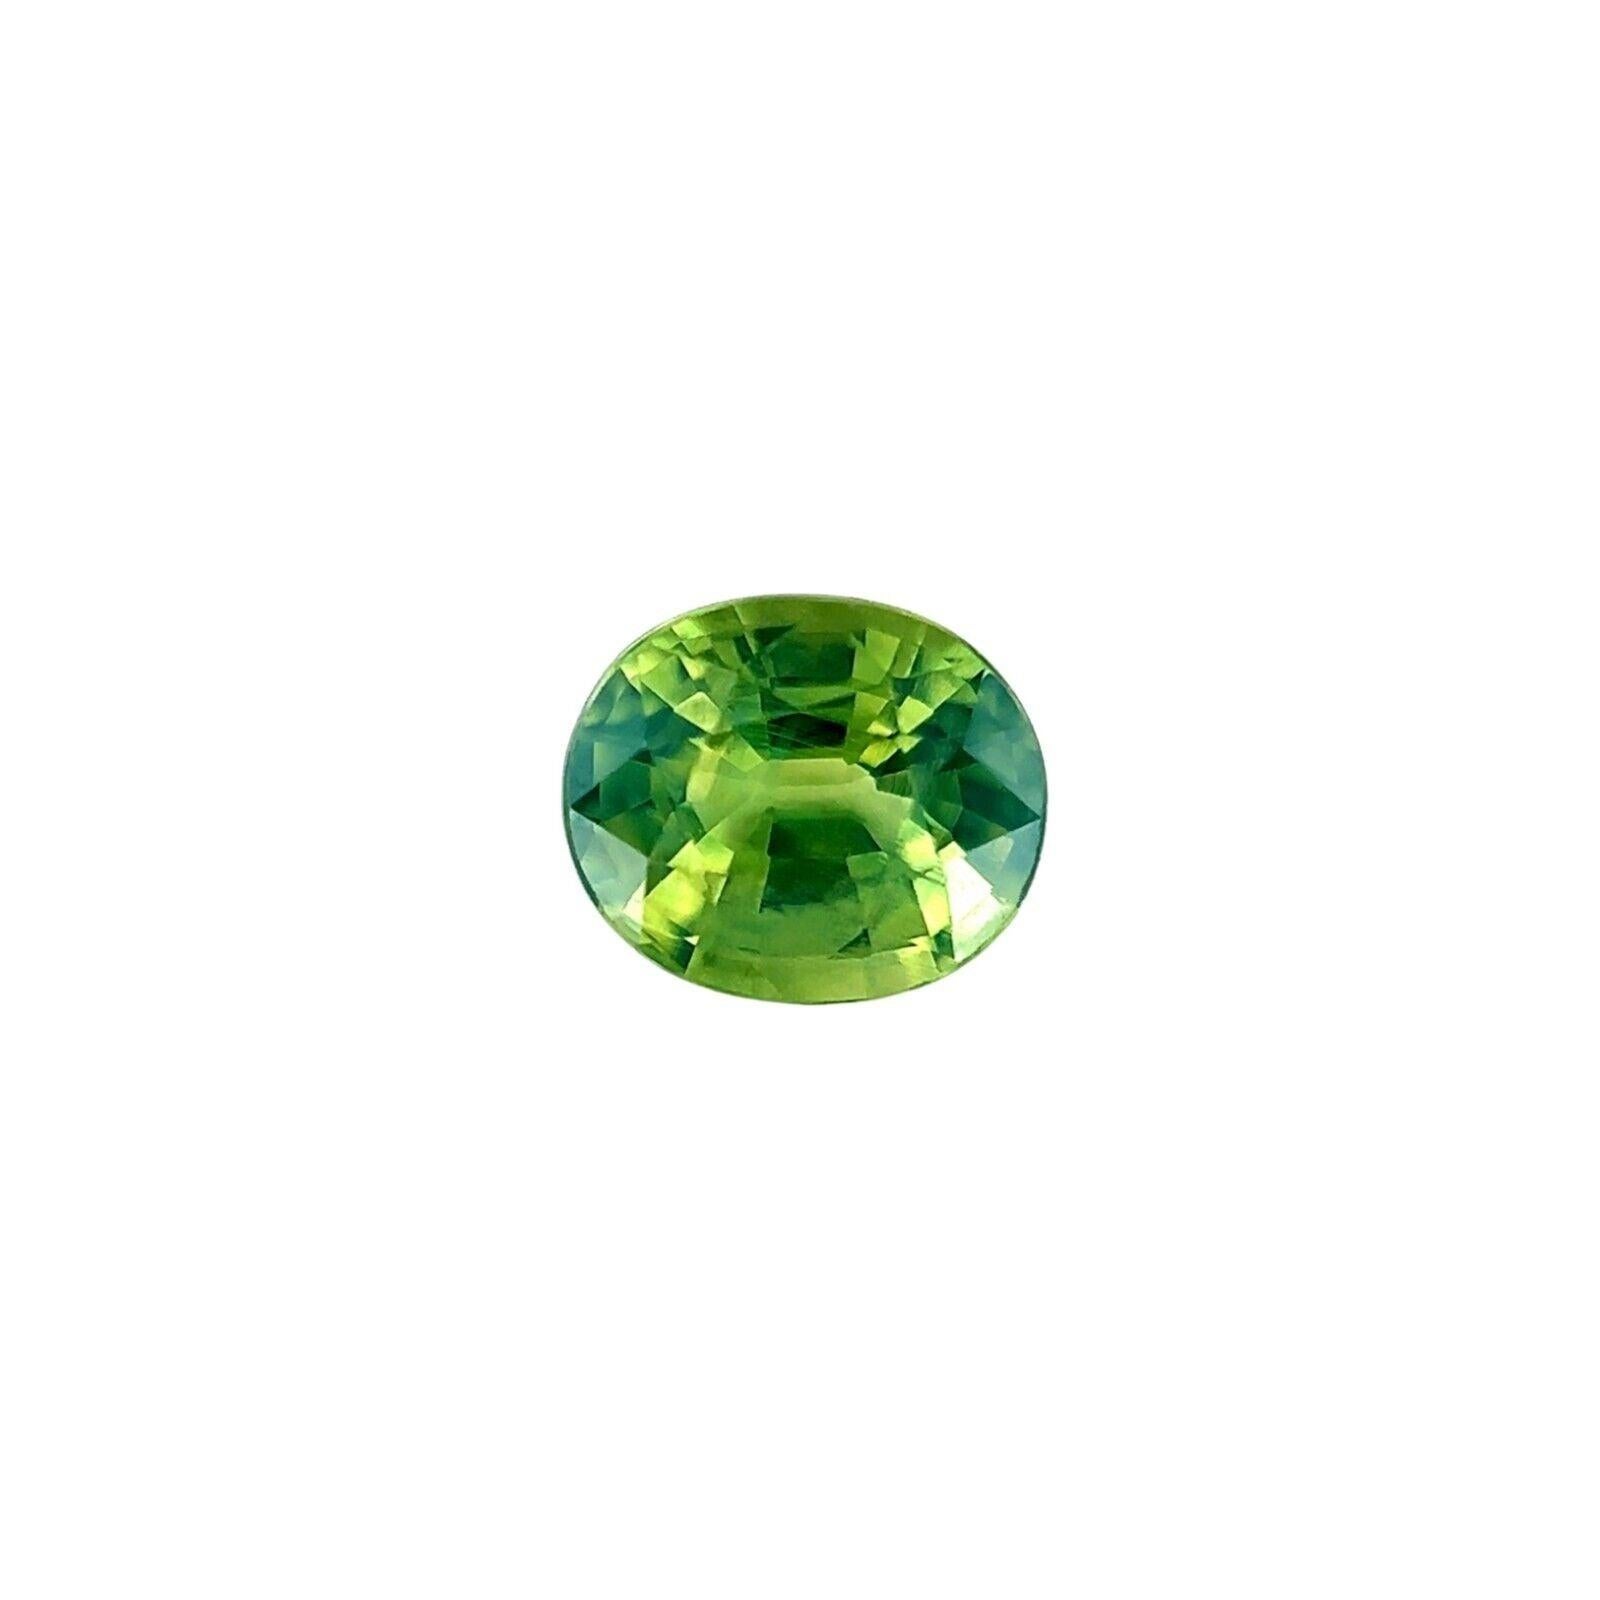 GIA Certified Vivid Yellow Green Sapphire 0.90Ct Natural Oval Cut Unheated Rare 

Saphir fin non traité jaune vif vert Pierre précieuse.
Saphir non chauffé de 0,90 carat. Entièrement certifiée par le GIA, confirmant que la pierre est naturelle et